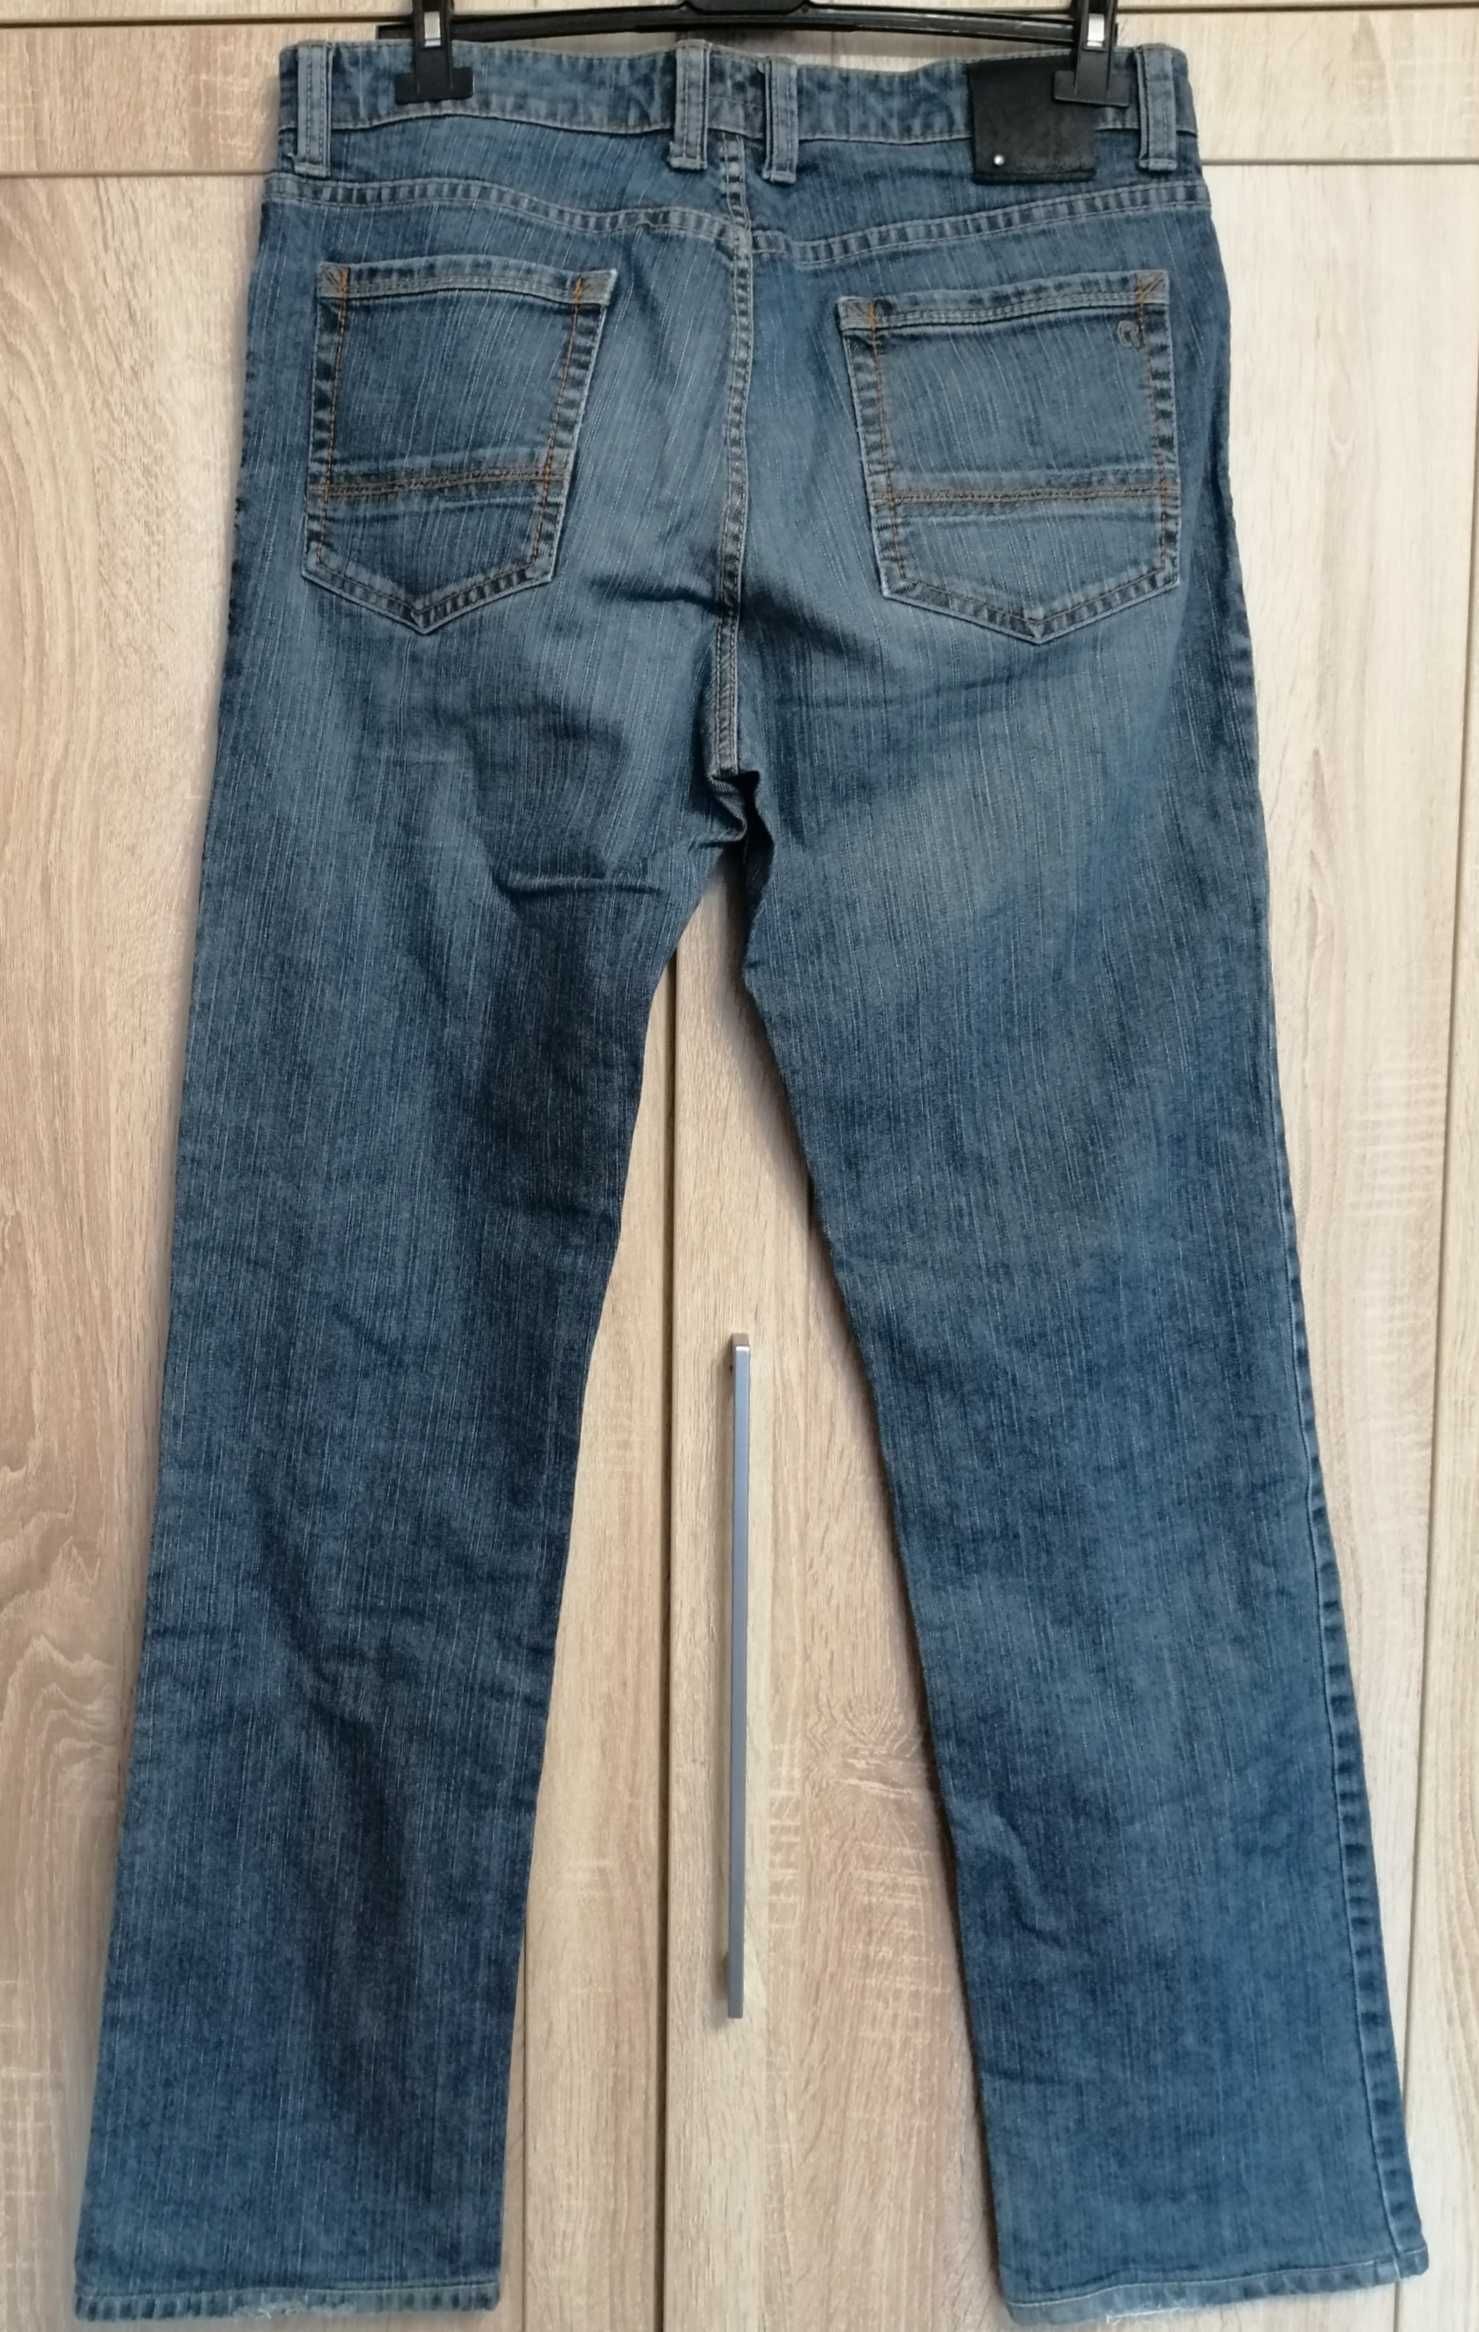 3w1: Spodnie męskie Mike Davis, Solid Jeans, Calamar